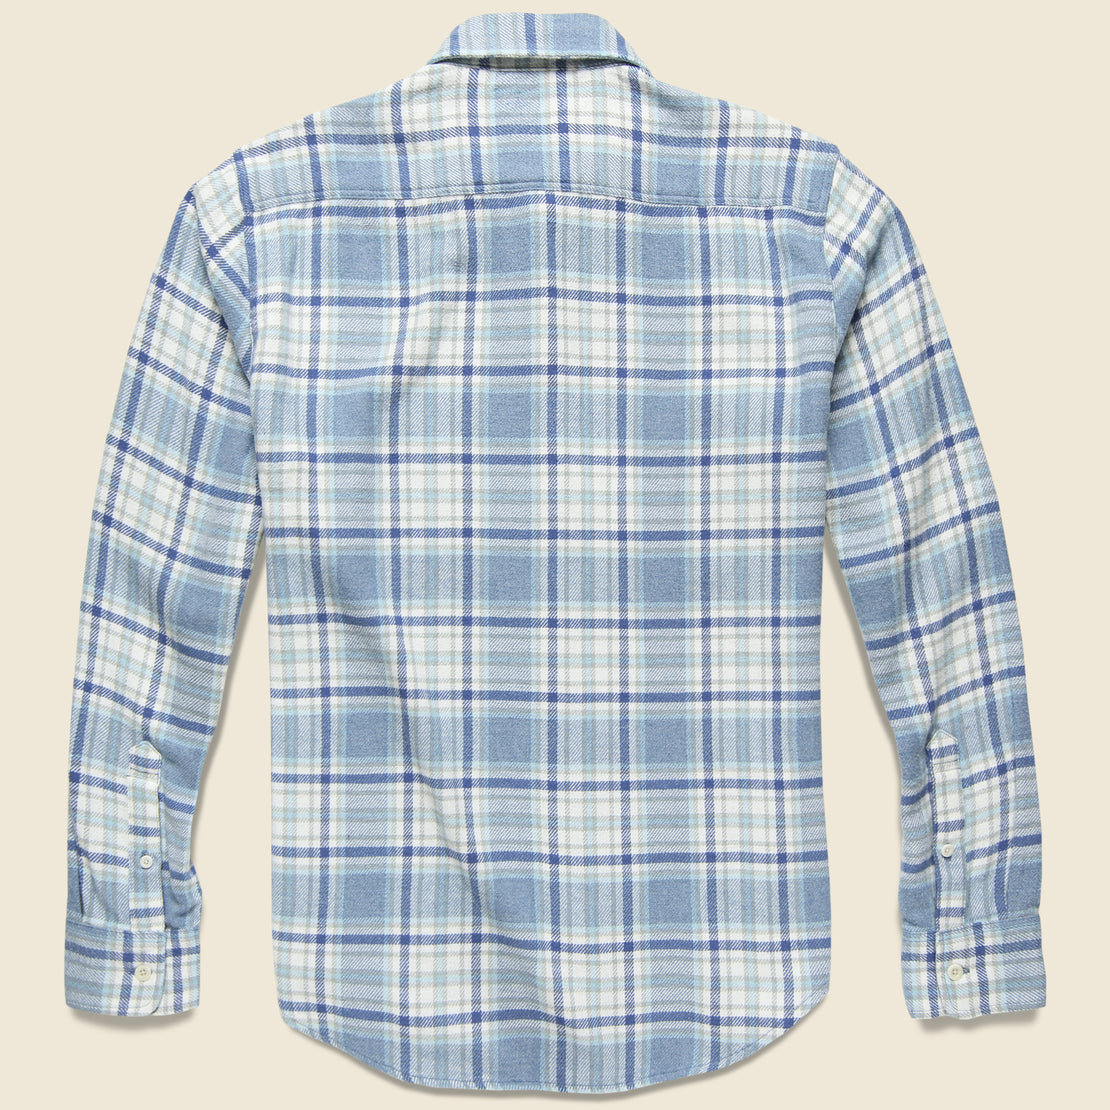 Seasons Shirt - Vintage Blue Plaid